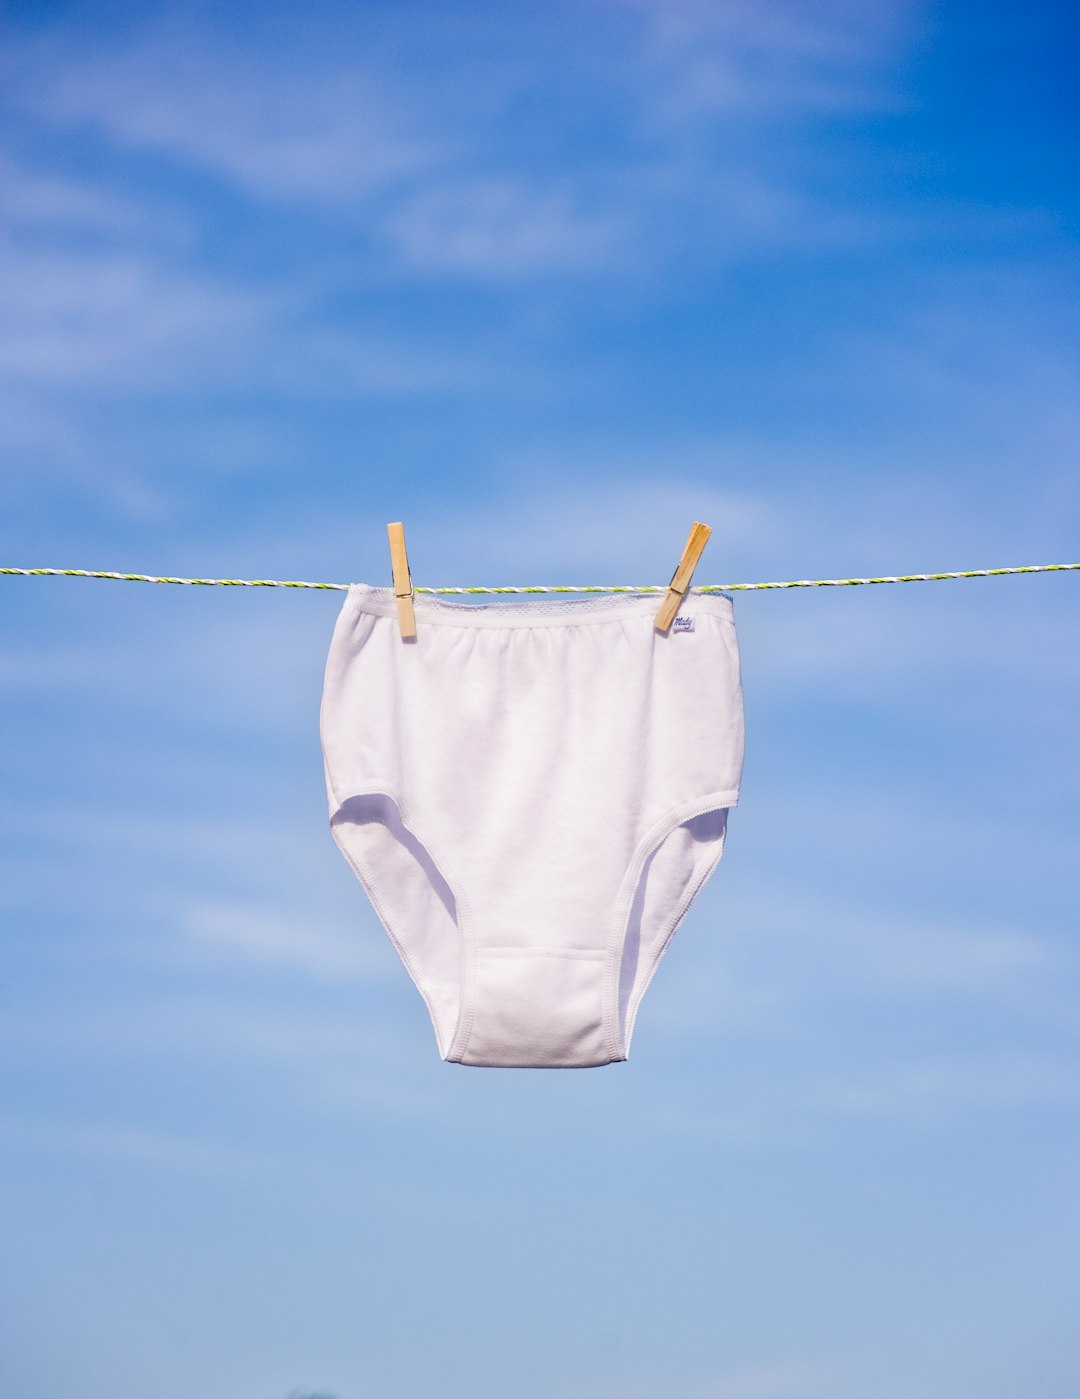 Sky, underwear, washing line